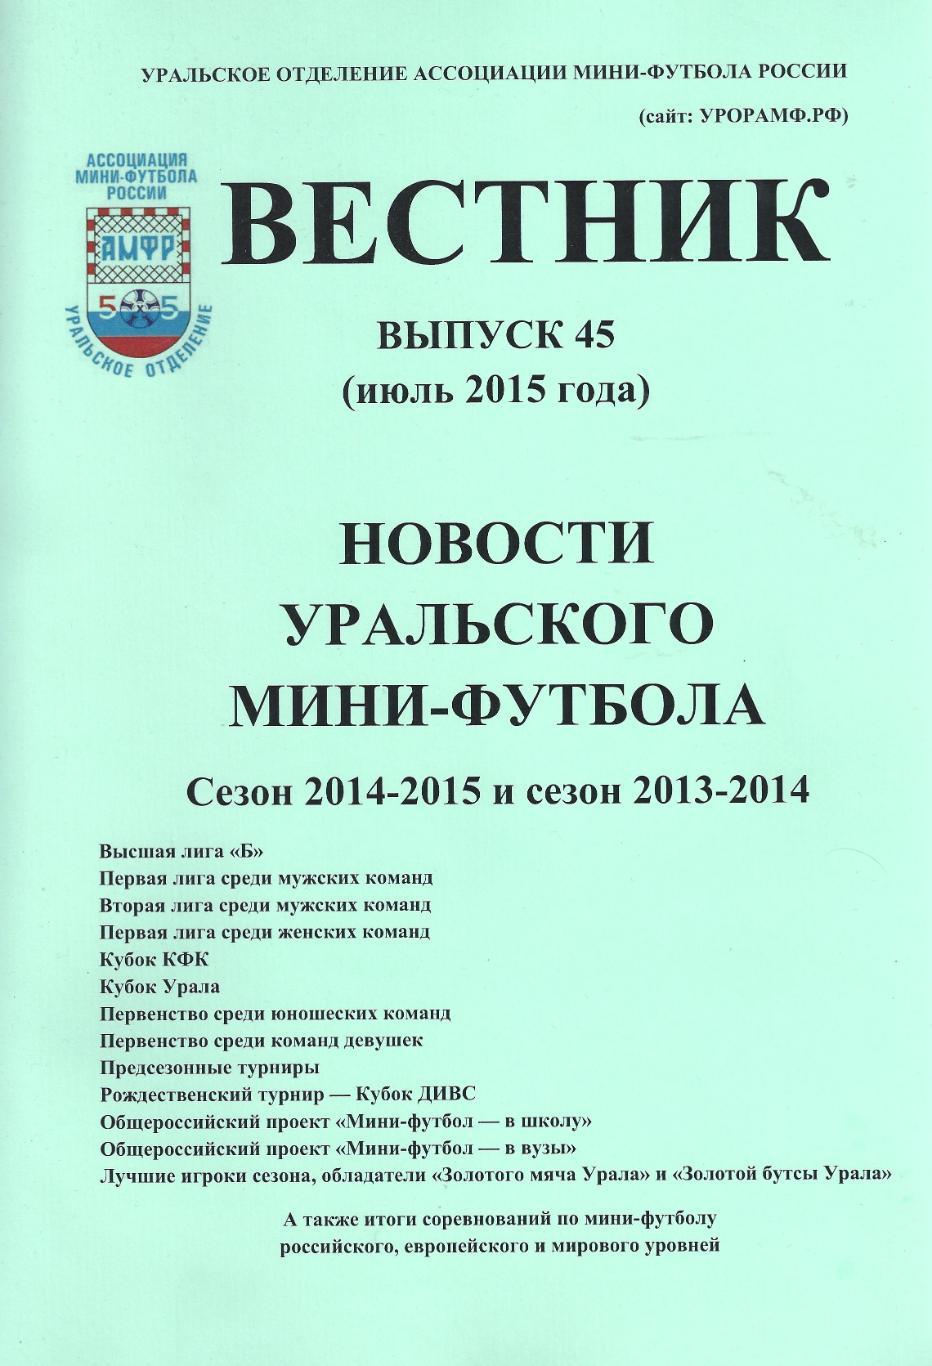 Вестник Новости уральского мини-футбола сезоны 2013/2014 и 2014/2015